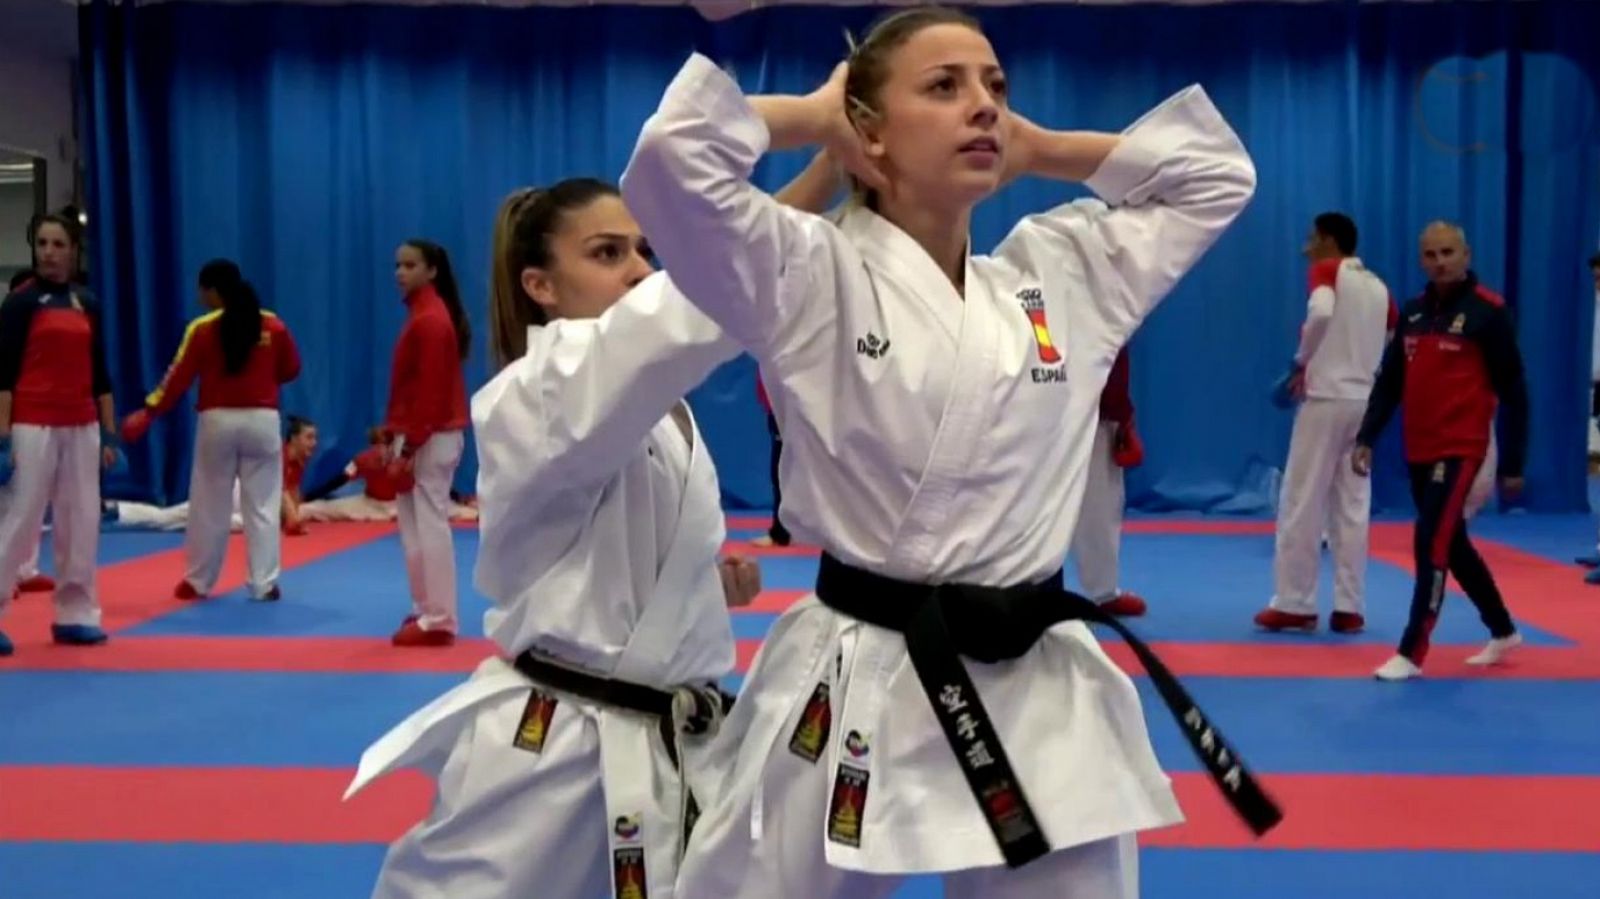 Mujer y deporte - Karate: 'Somos nosotras'